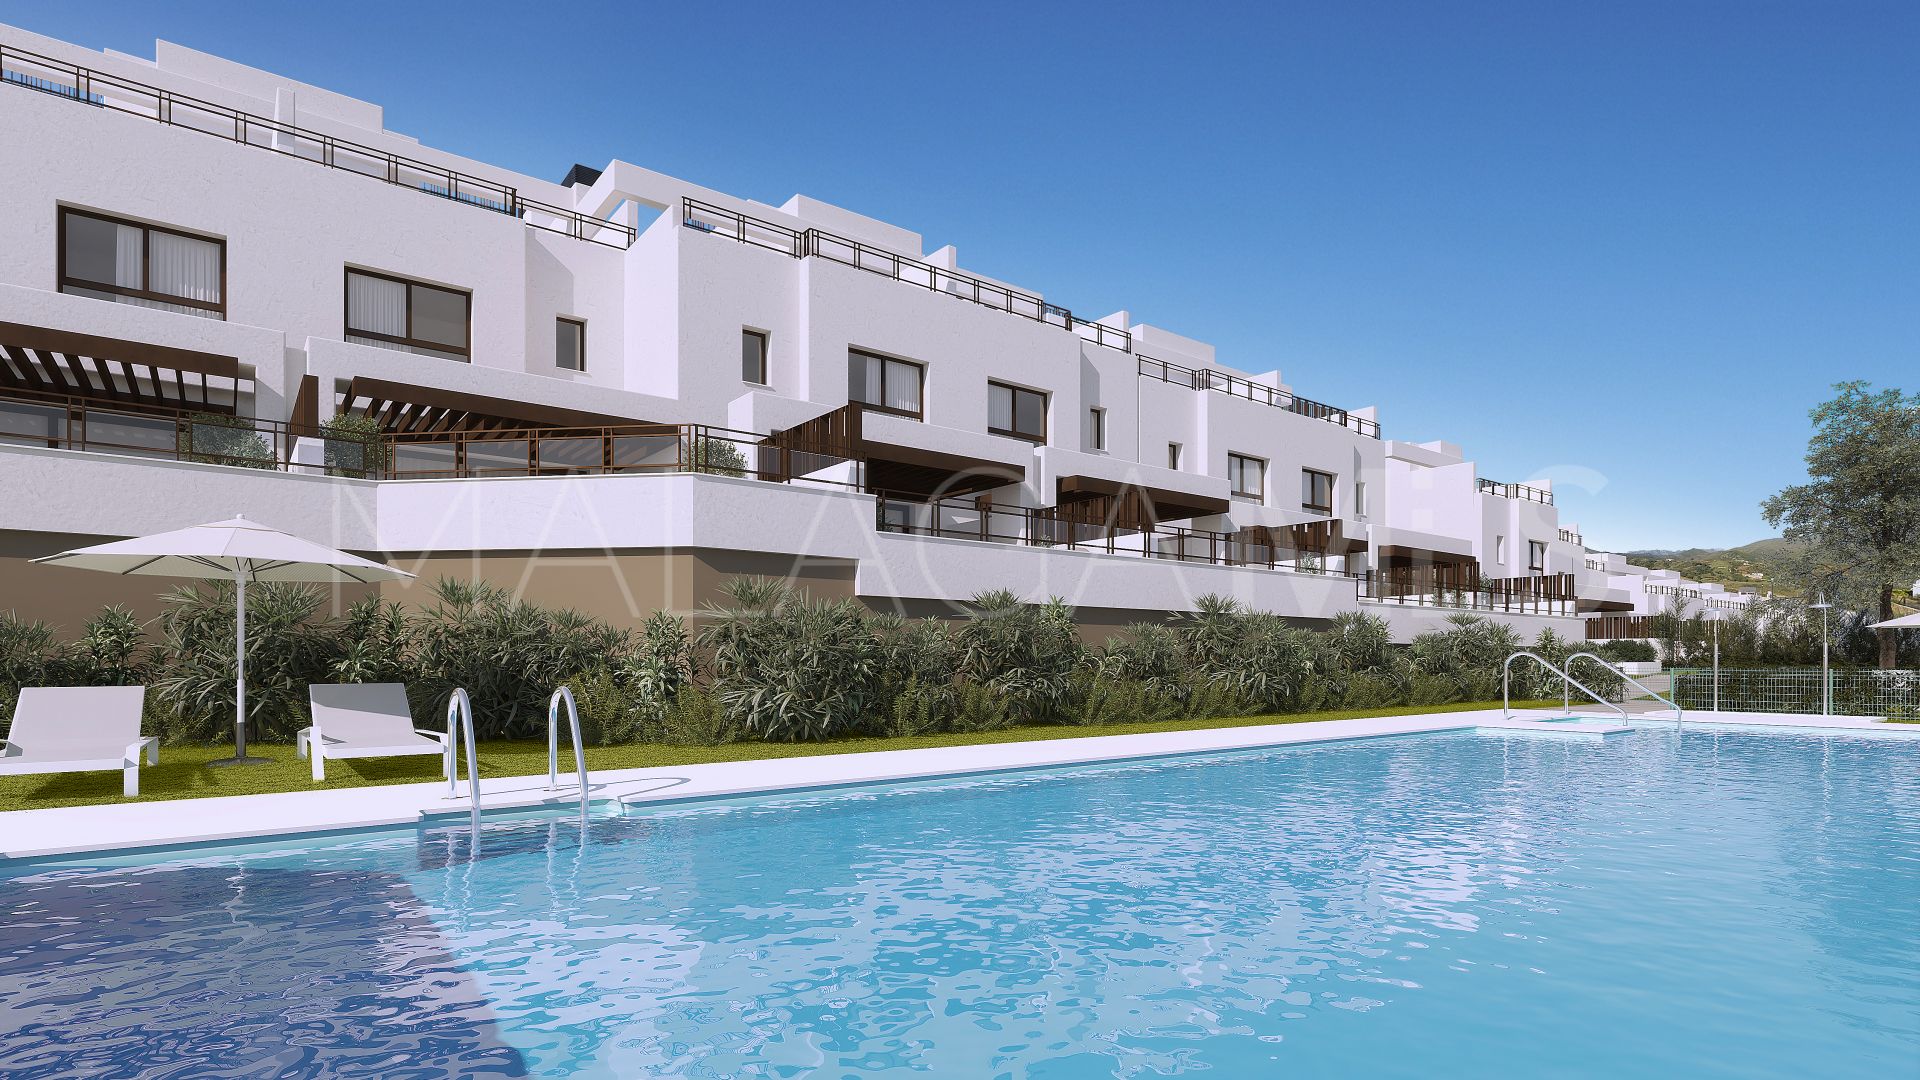 La Cala Golf Resort, adosado a la venta with 3 bedrooms